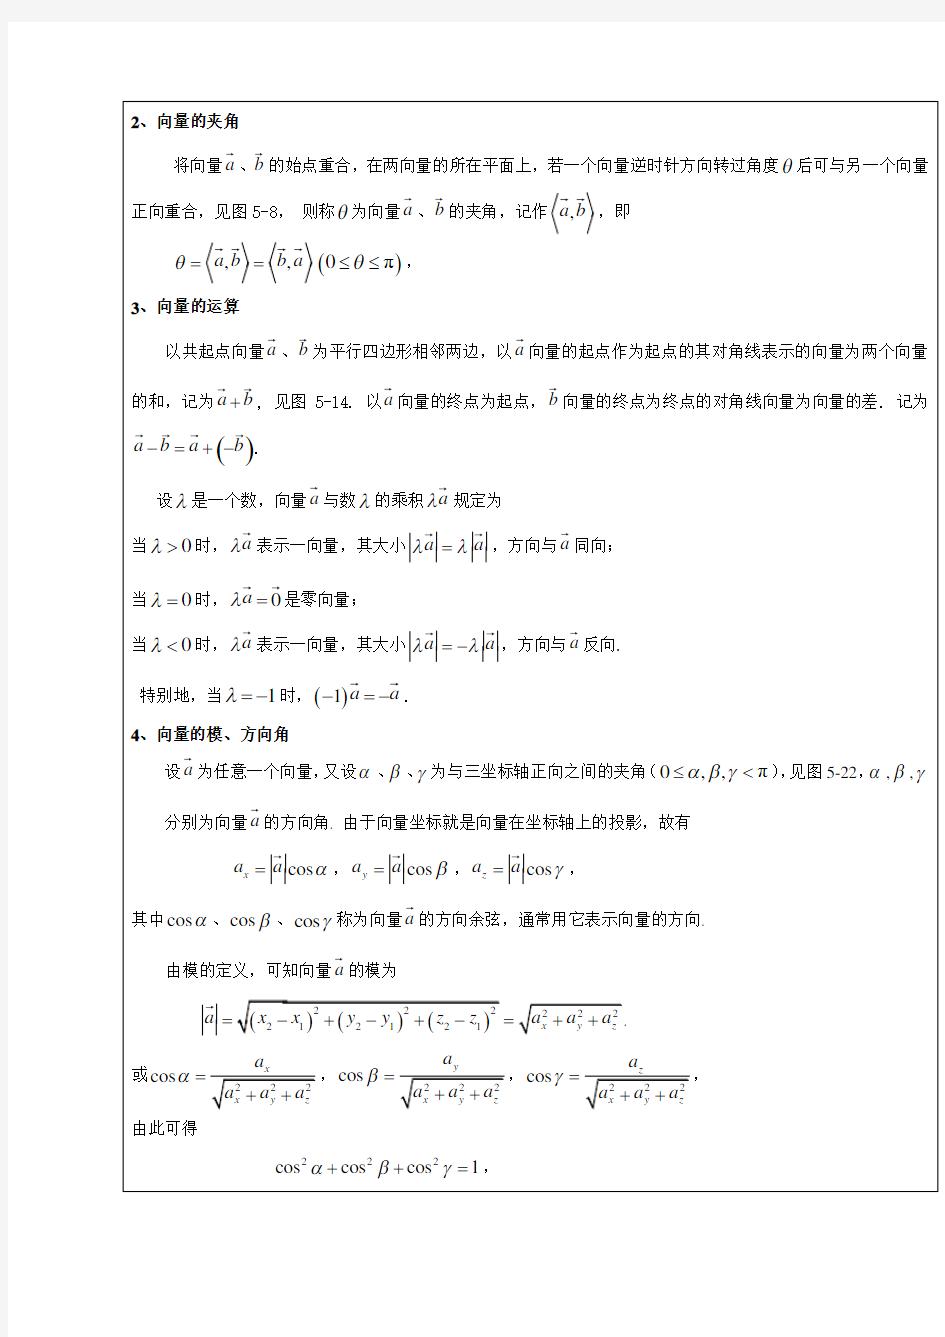 《高等数学(下)》—教学教案第五章向量与空间解析几何